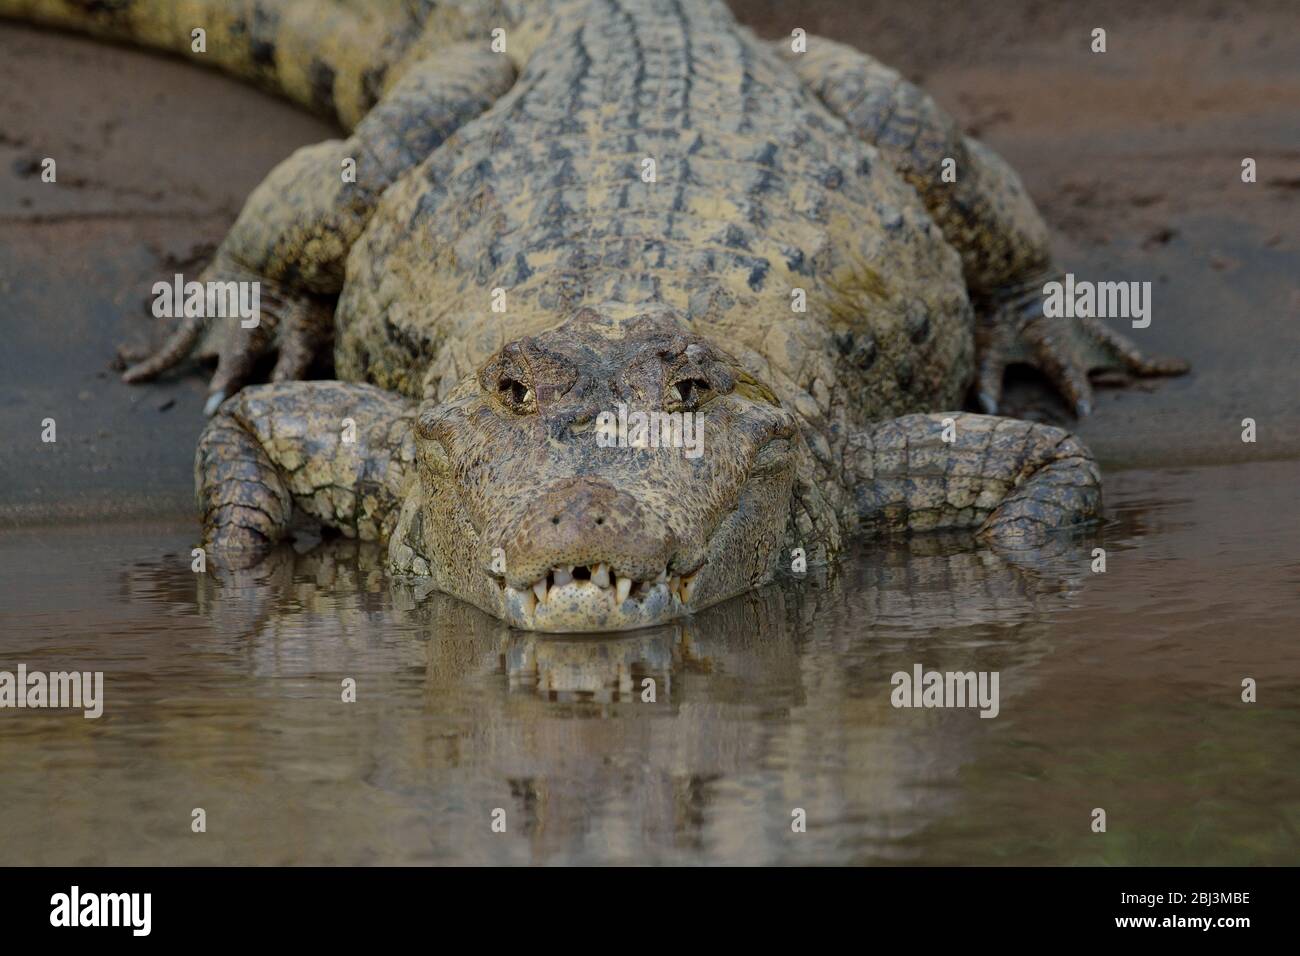 American crocodile in Tarcoles river Costa Rica Stock Photo